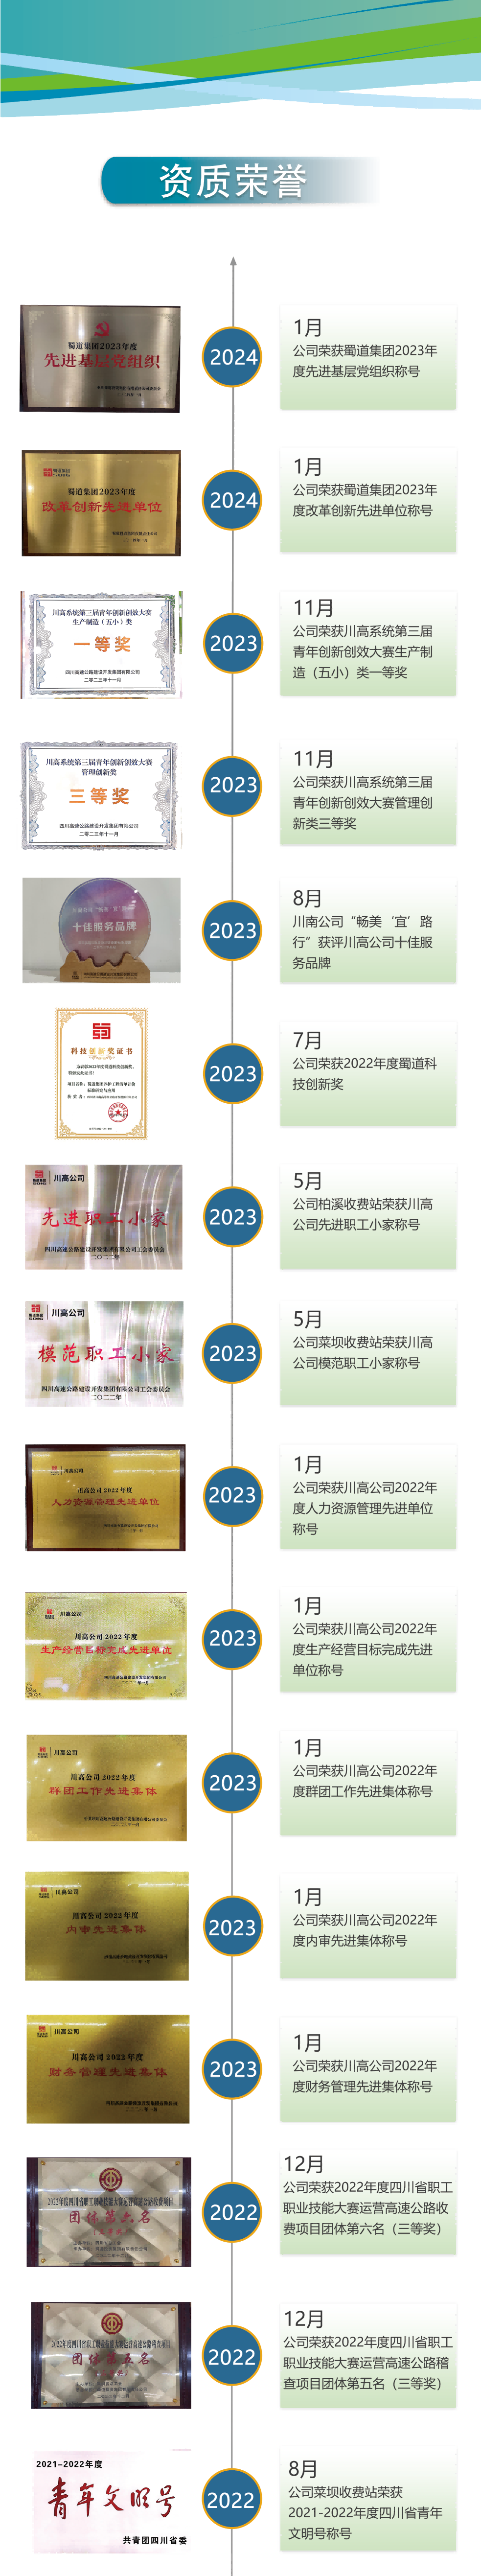 公司荣誉202208-202401(1).png